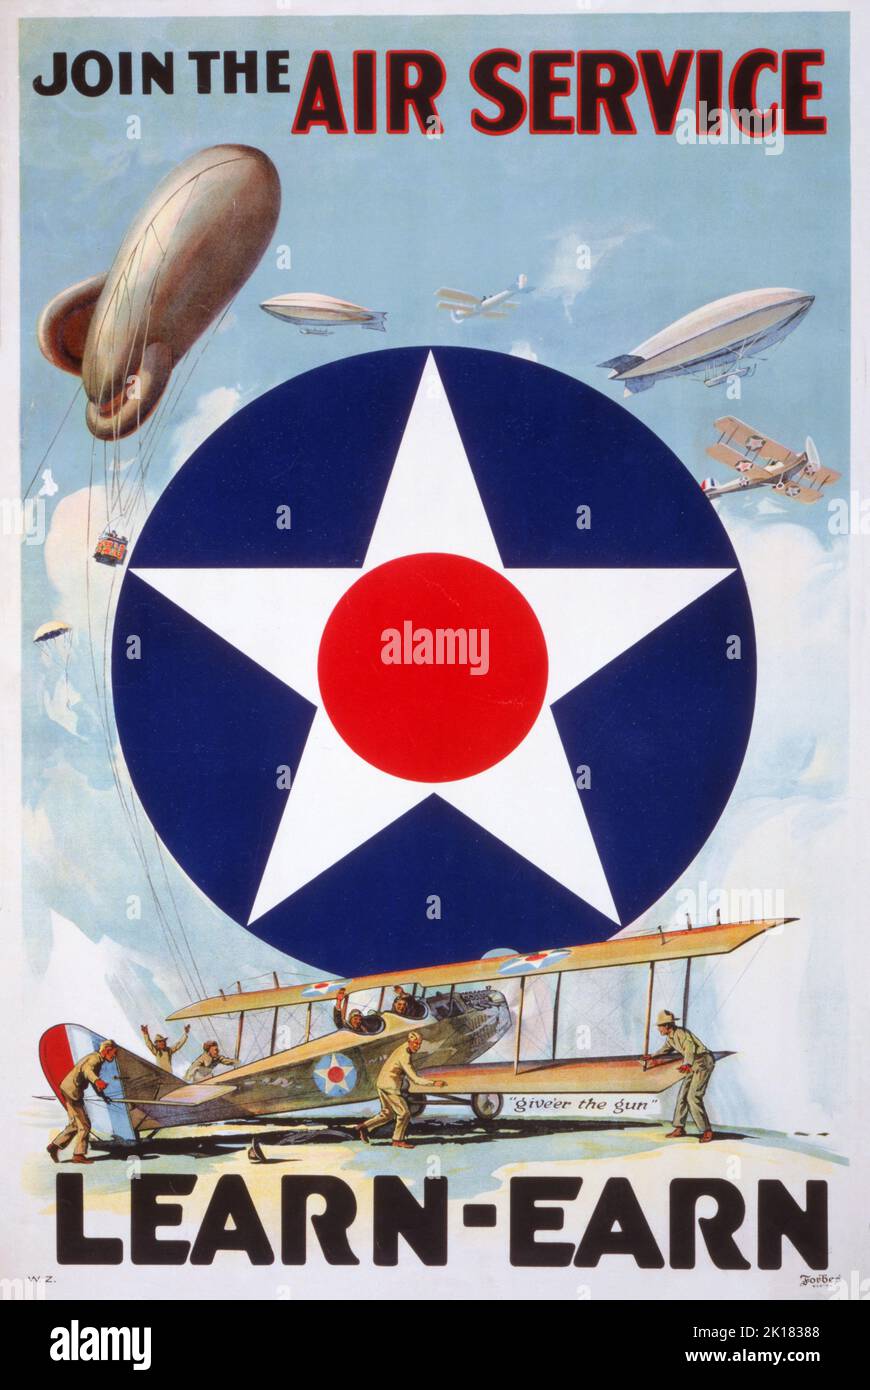 Ein Rekrutierungsplakat für den United States Army Air Service, auch bekannt als 'Air Service', die Luftkriegsdienstkomponente der United States Army zwischen 1918 und 1926 und ein Vorläufer der United States Air Force. Stockfoto